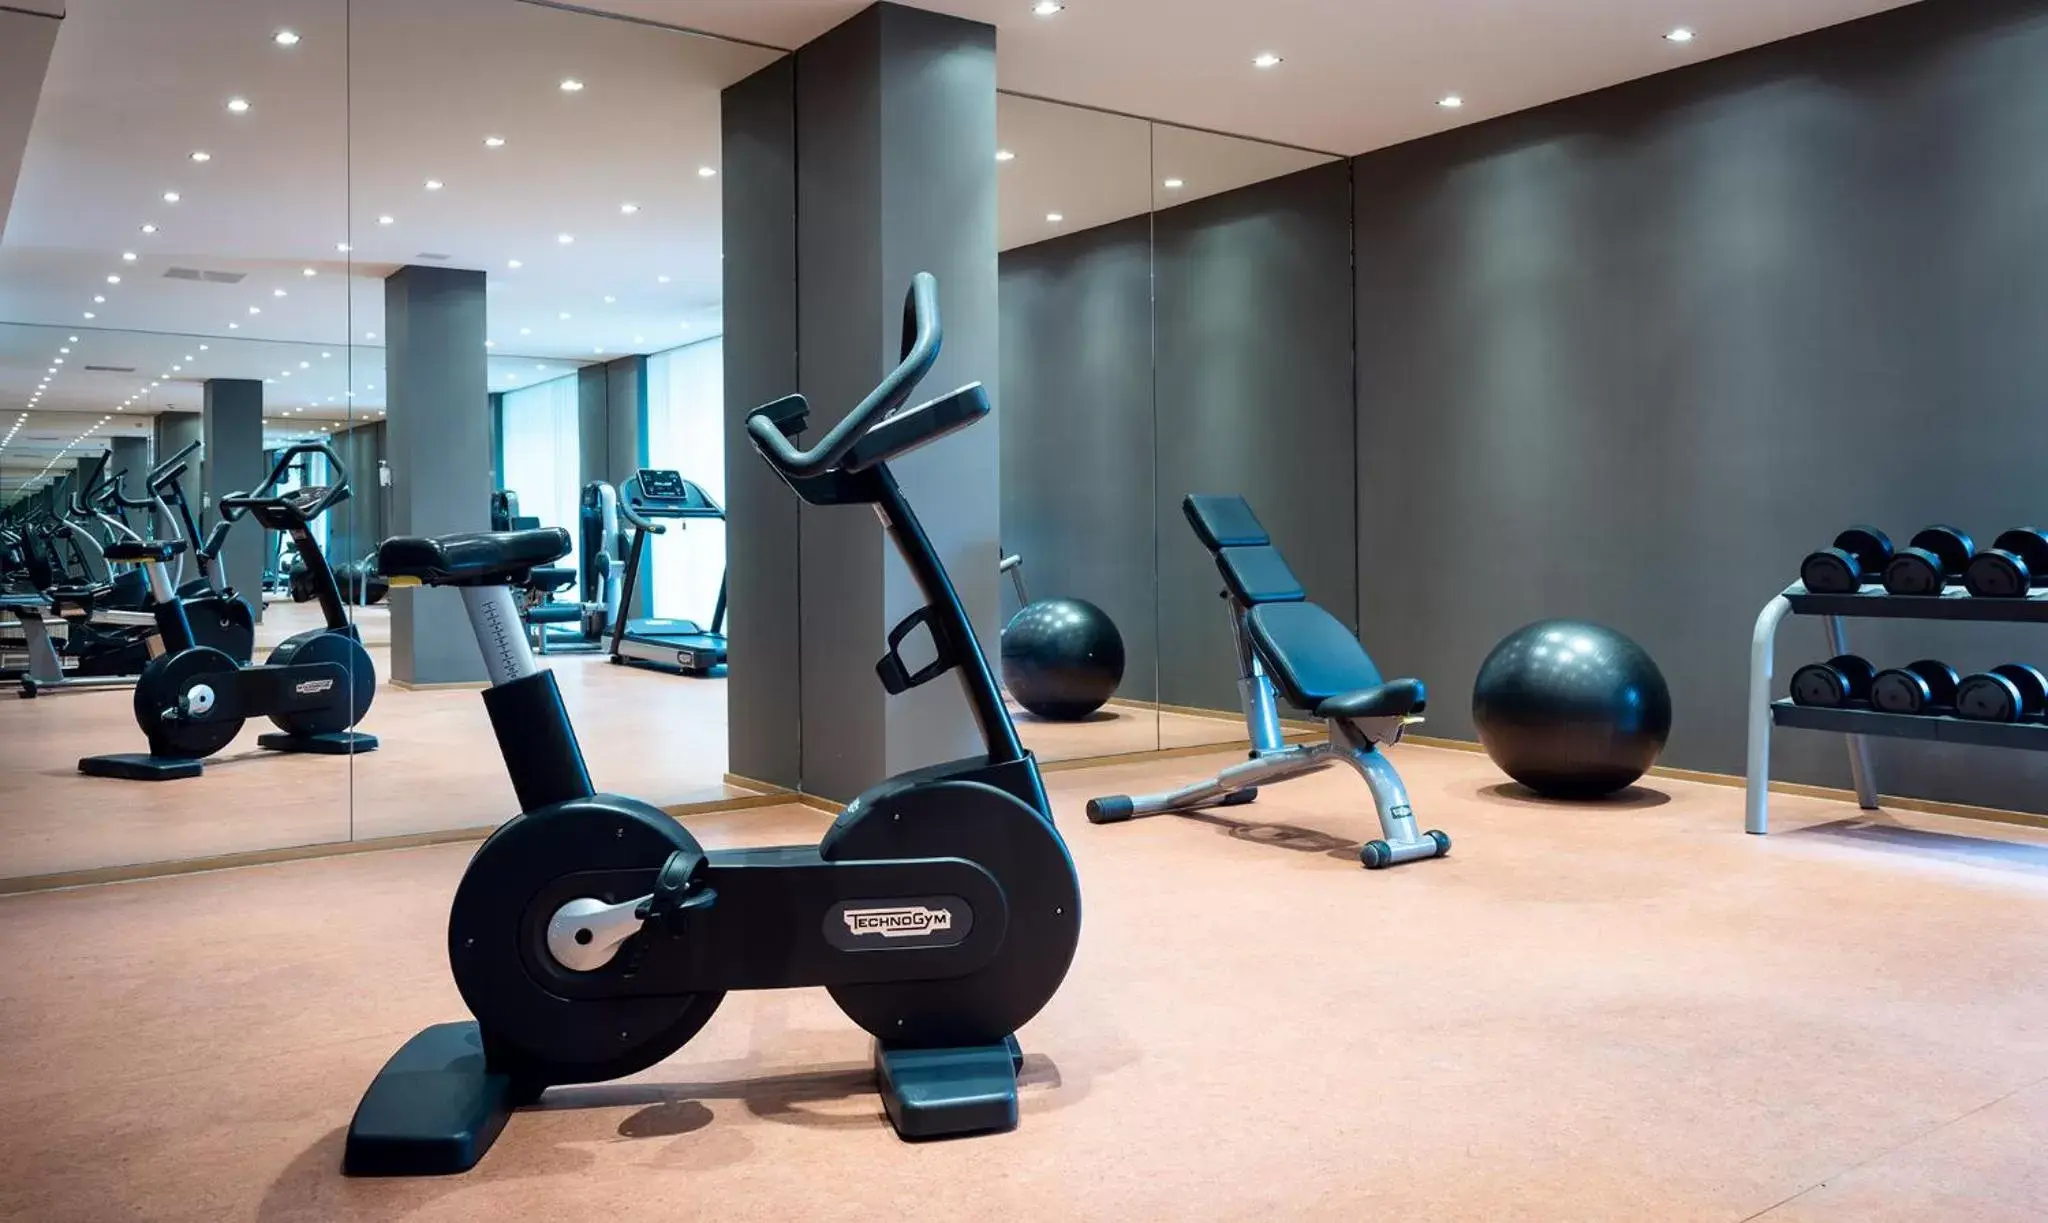 Fitness centre/facilities, Fitness Center/Facilities in AMERON Köln Hotel Regent